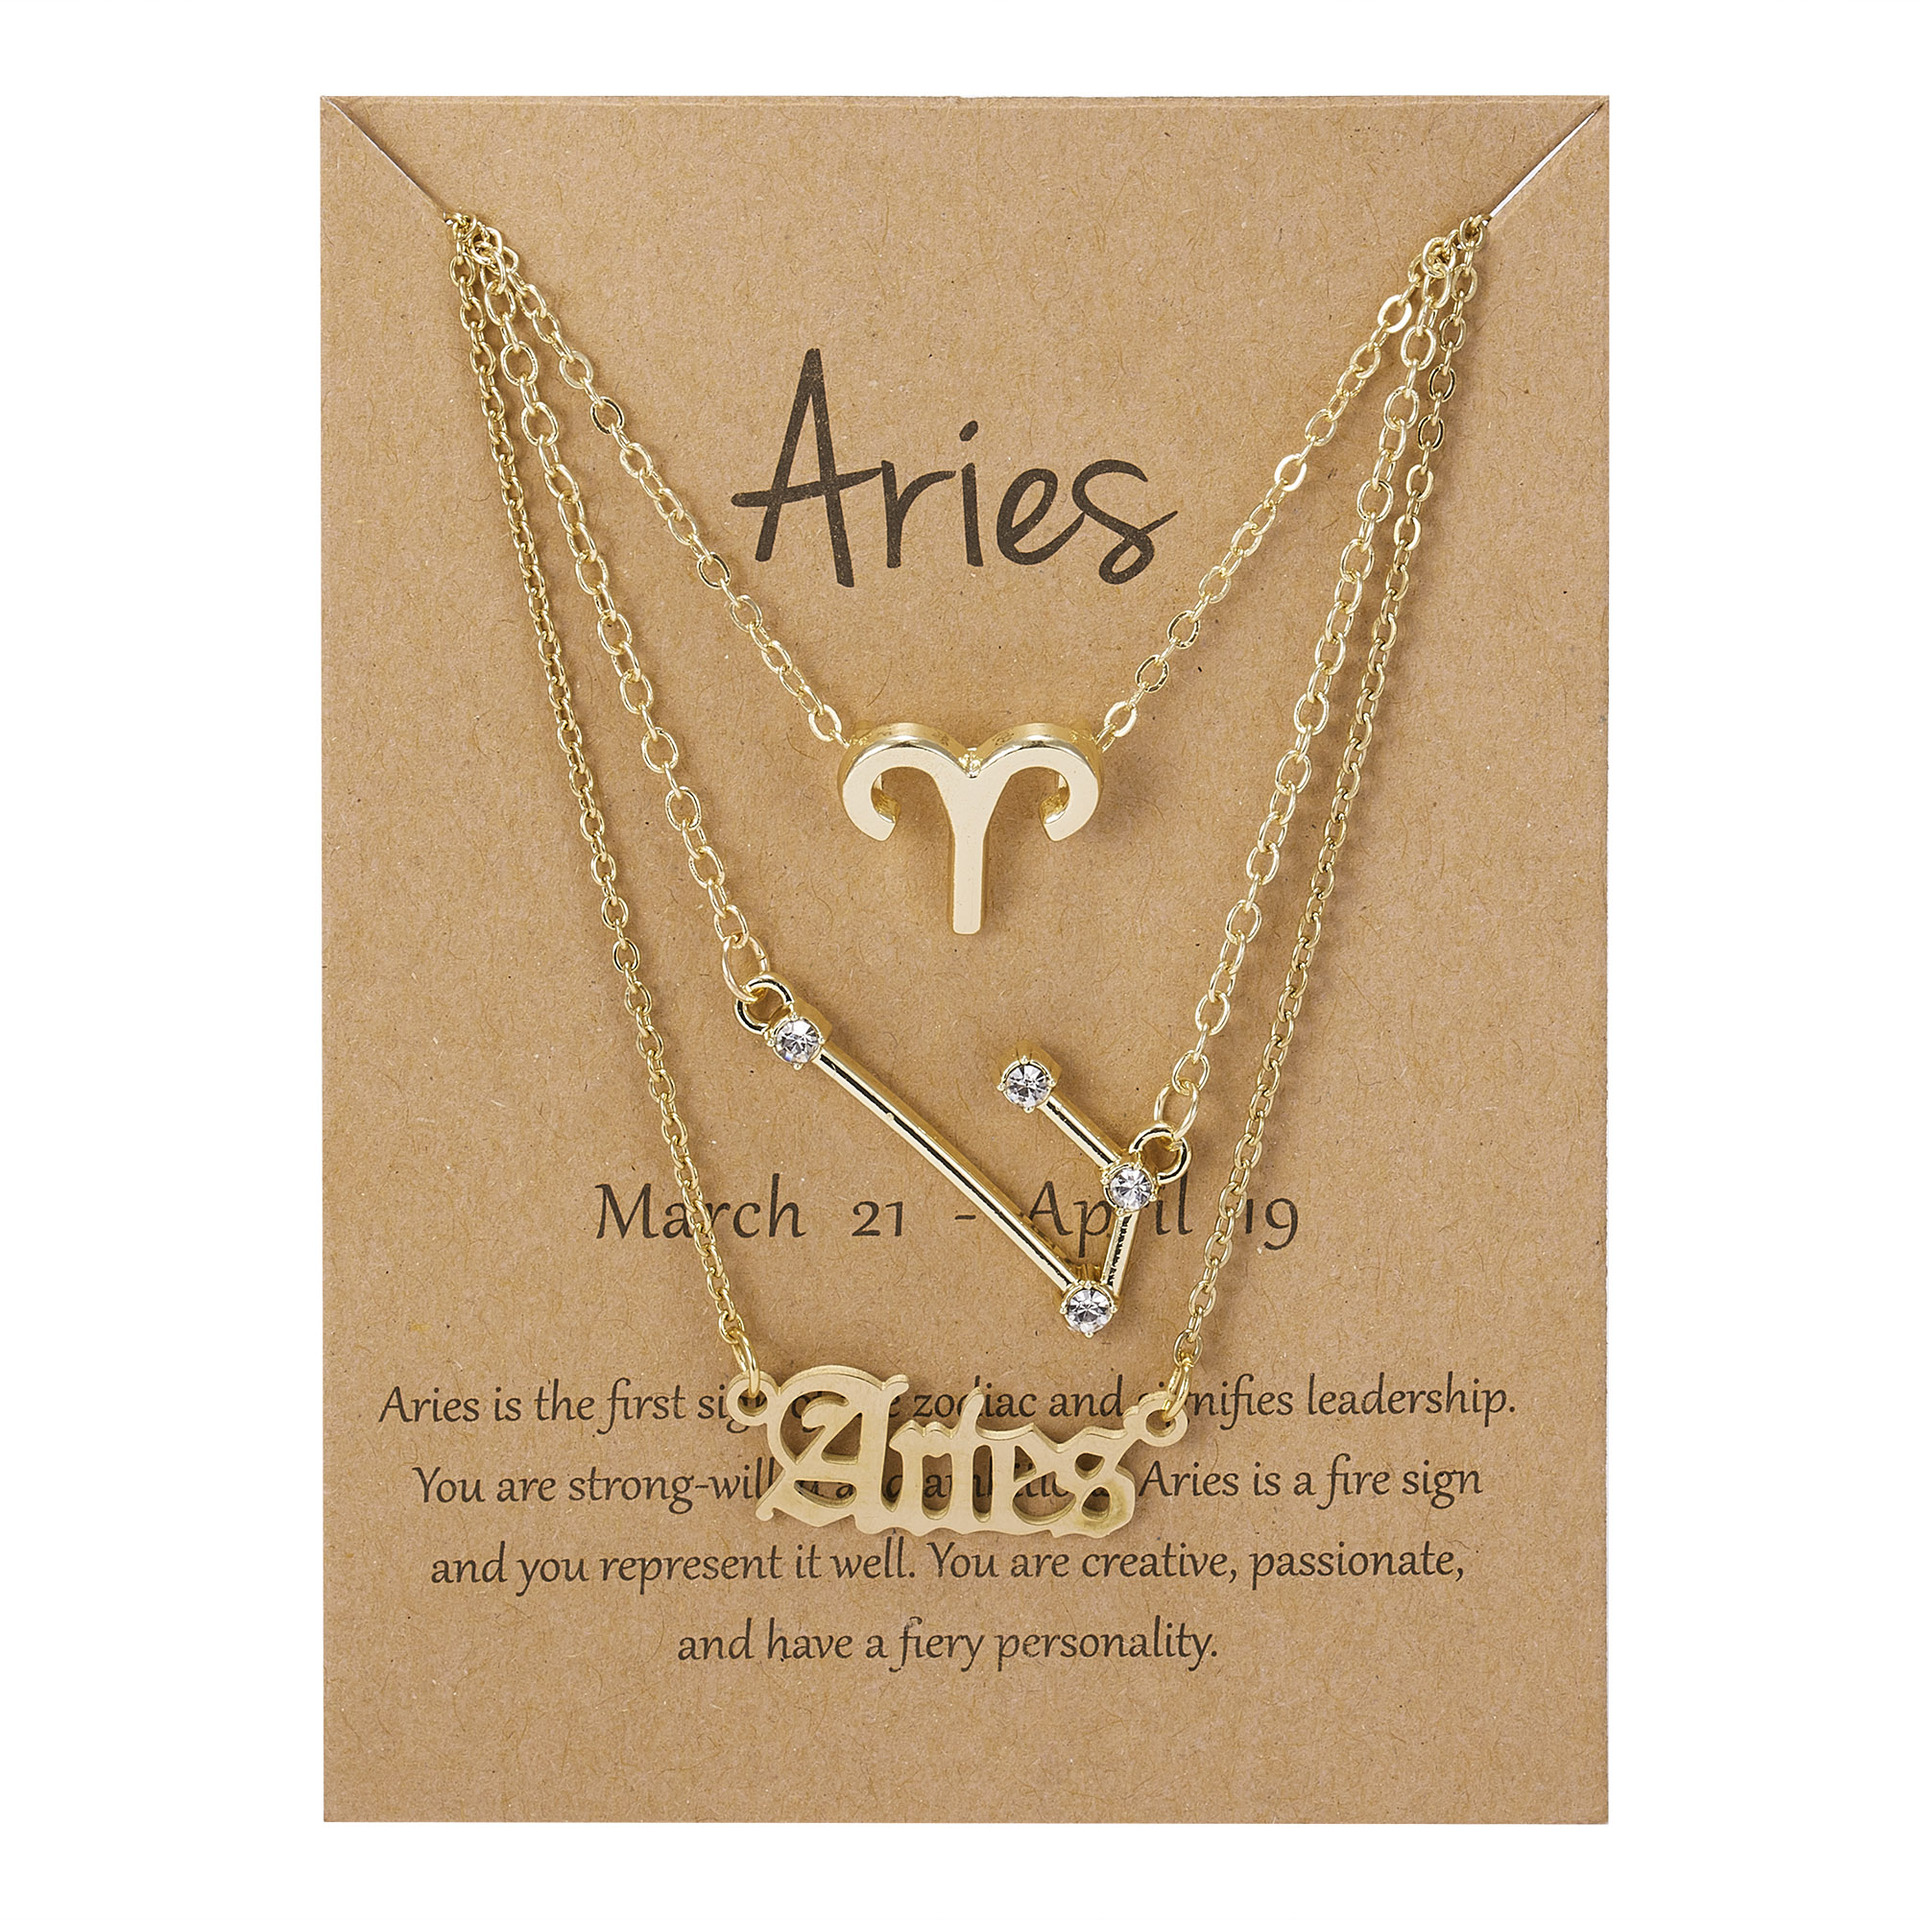 3:Aries golden